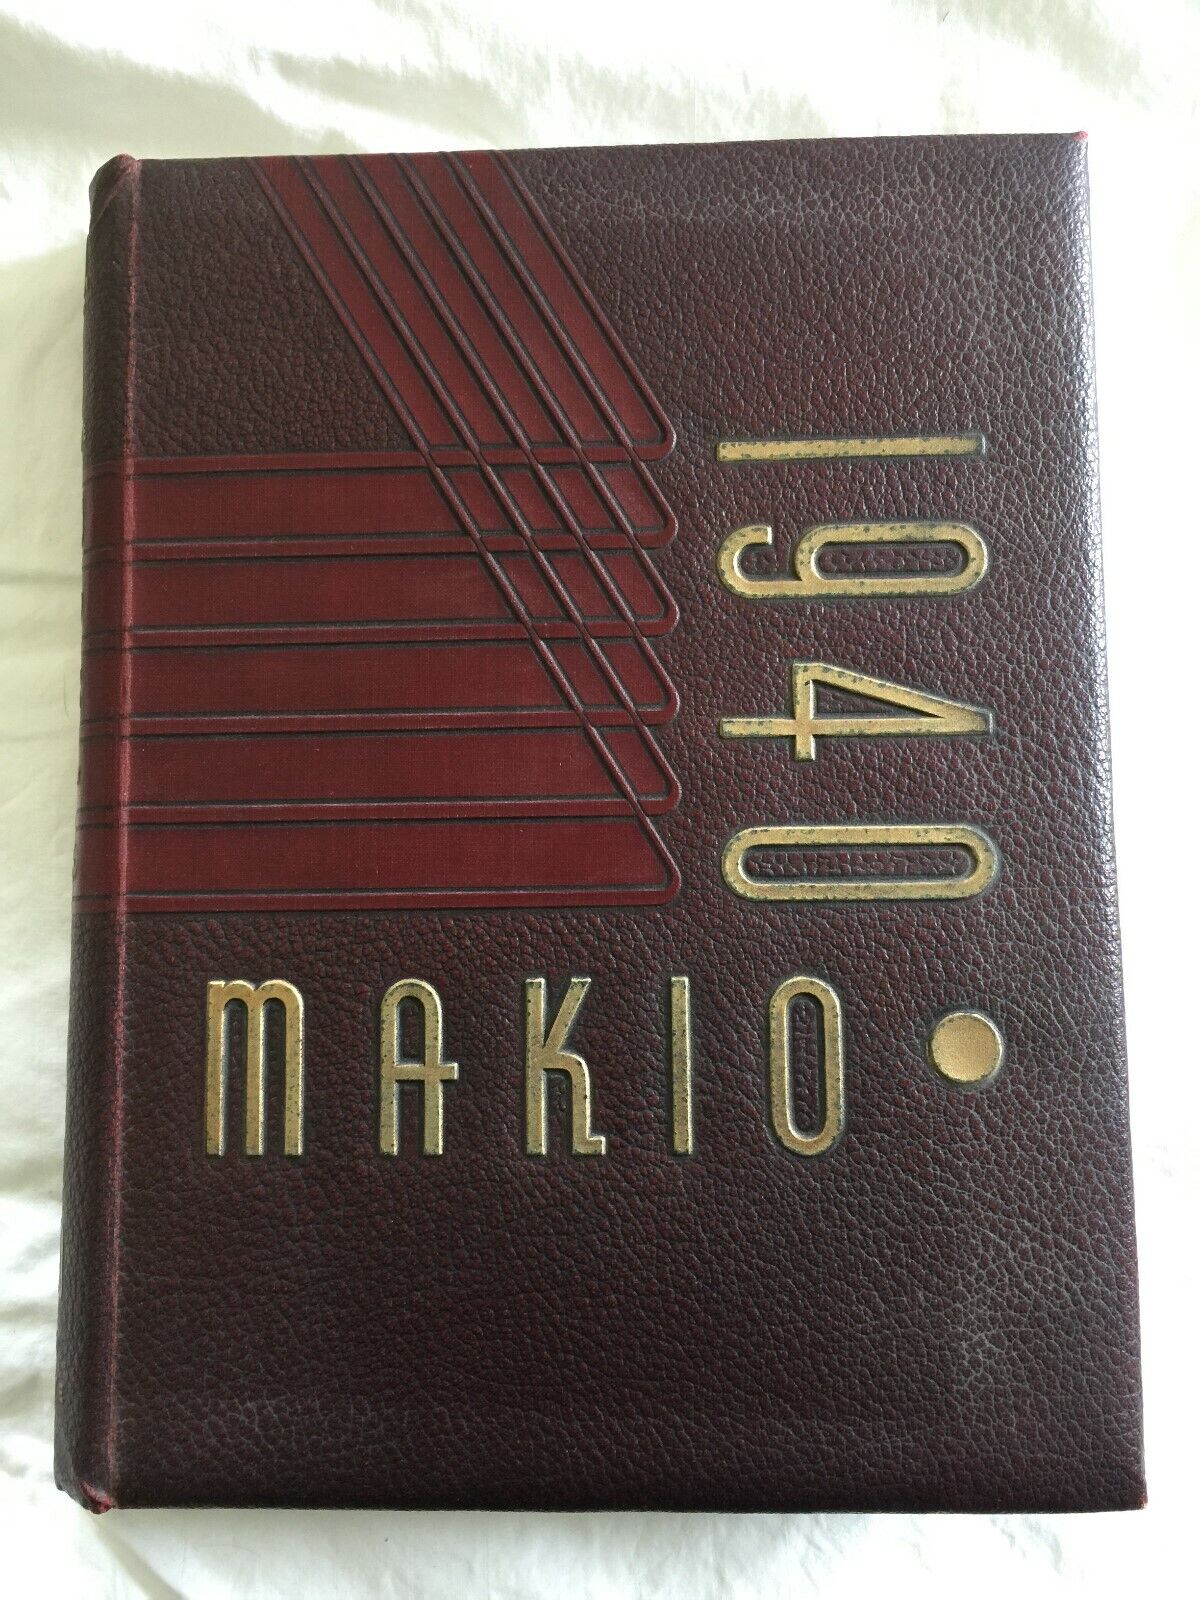 1940 Ohio State University Yearbook - The Makio - Columbus, OH